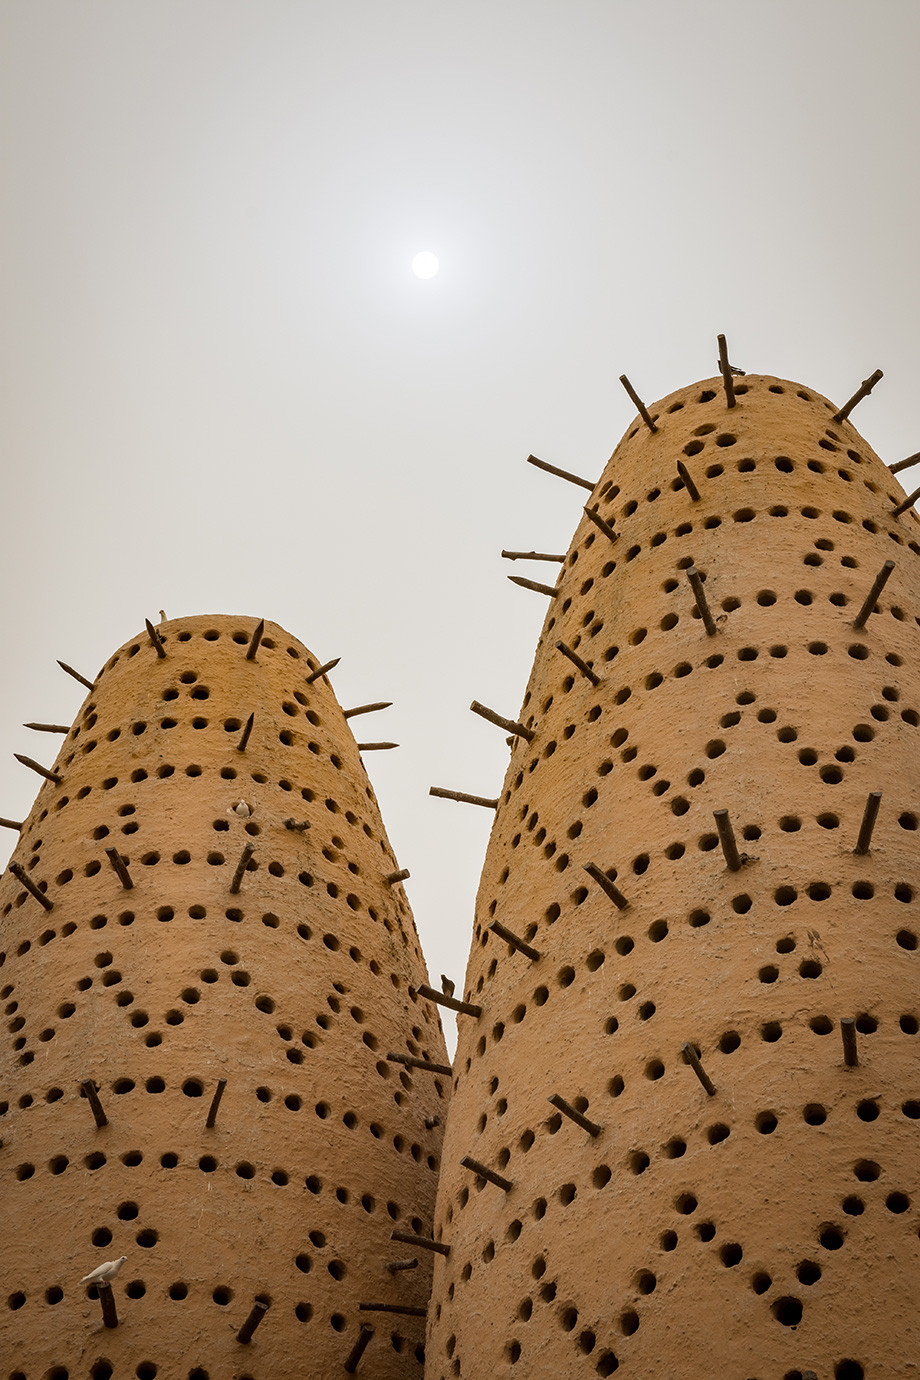 Село культурної спадщини Катару (Katara